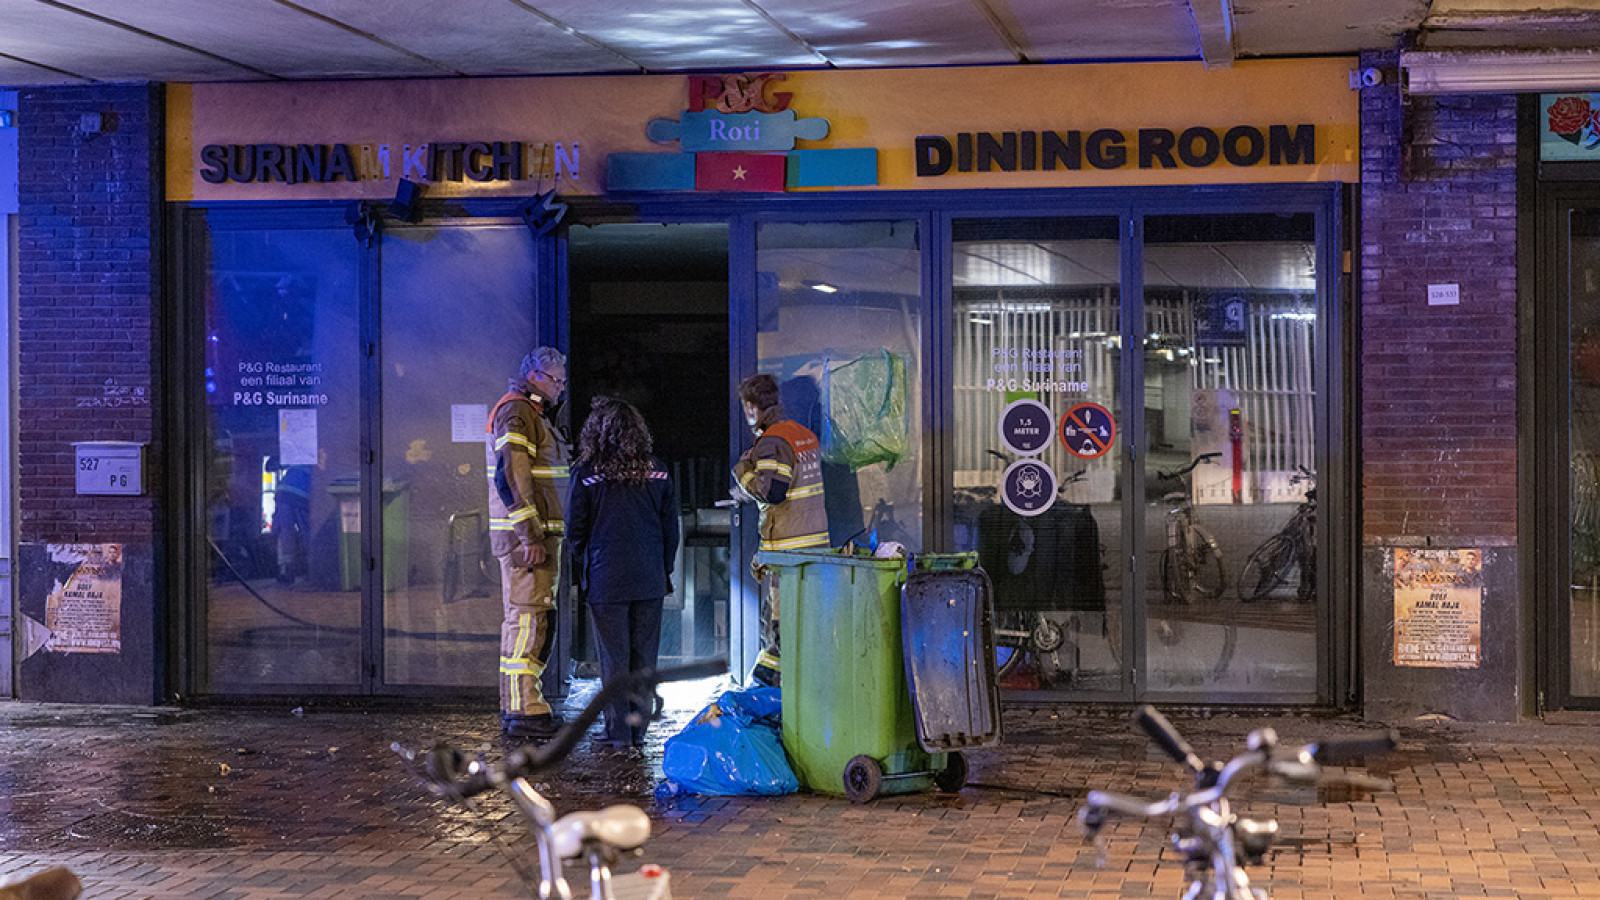 Explosie en brand bij restaurant aan Bijlmerplein 